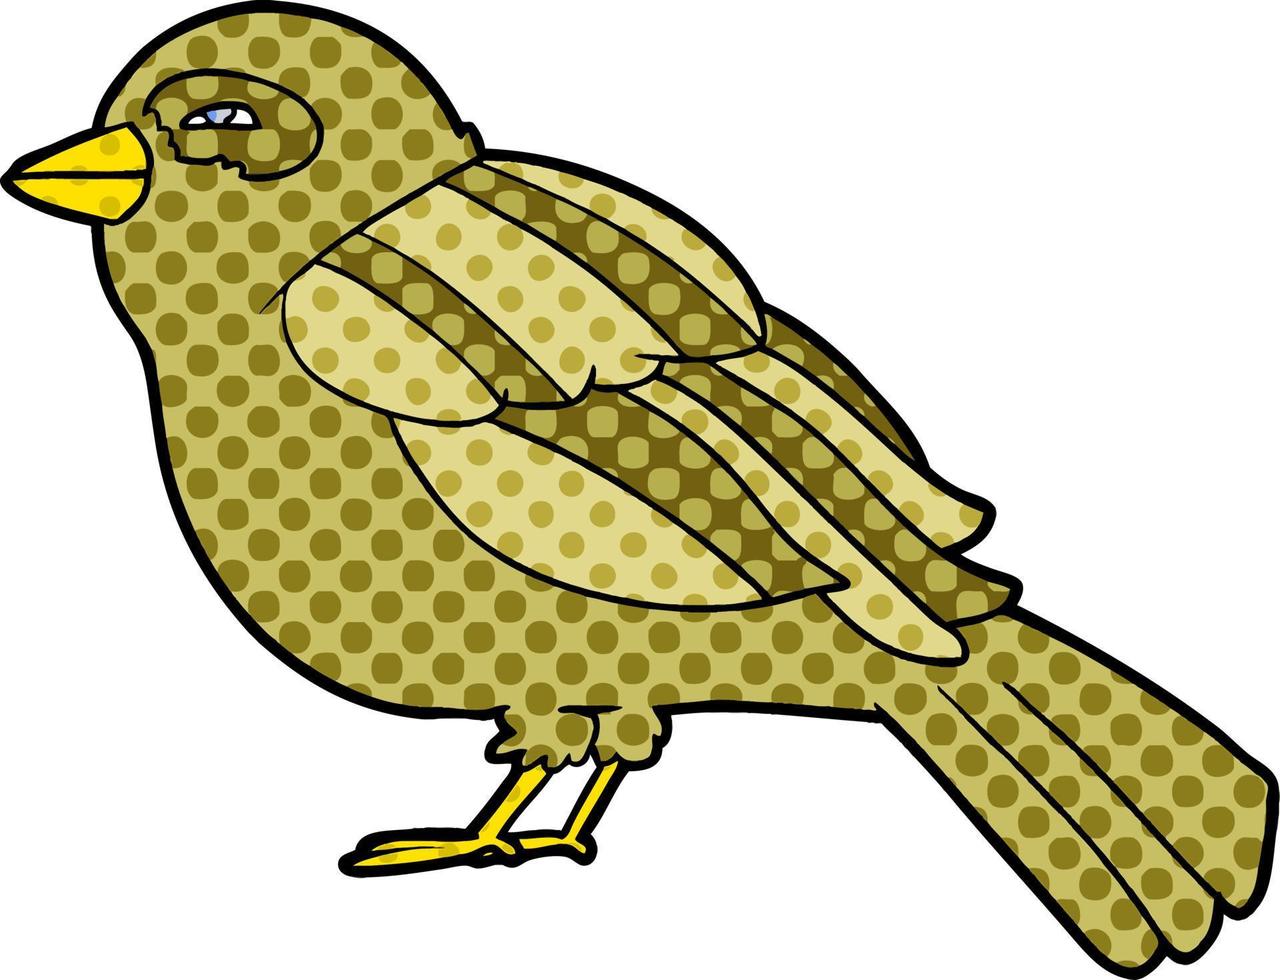 personaje de pájaro de dibujos animados vector